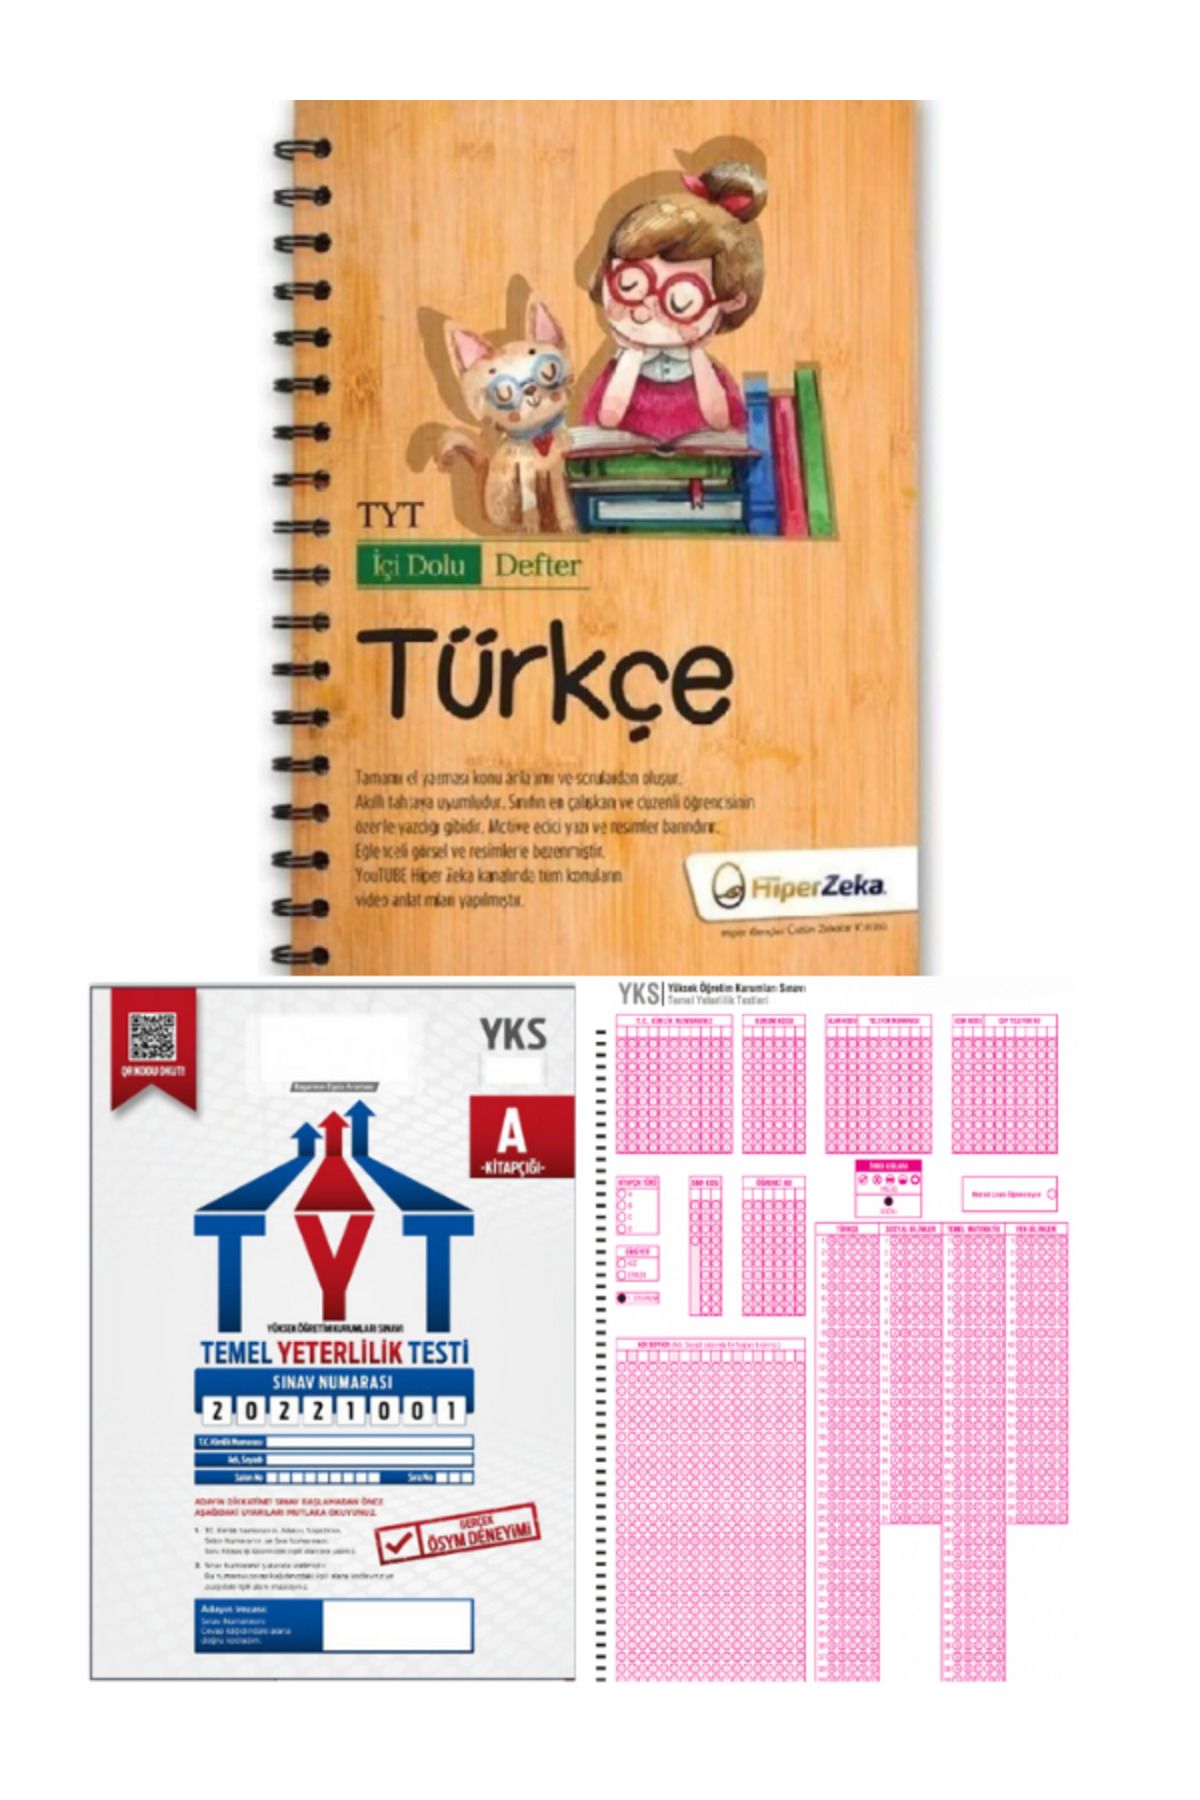 ALAKENT Tyt Deneme ve Optik + Hiper Zeka Yayınları Tyt Türkçe Içi Dolu Defter (konu Anlatımı Ve Soru Bankası